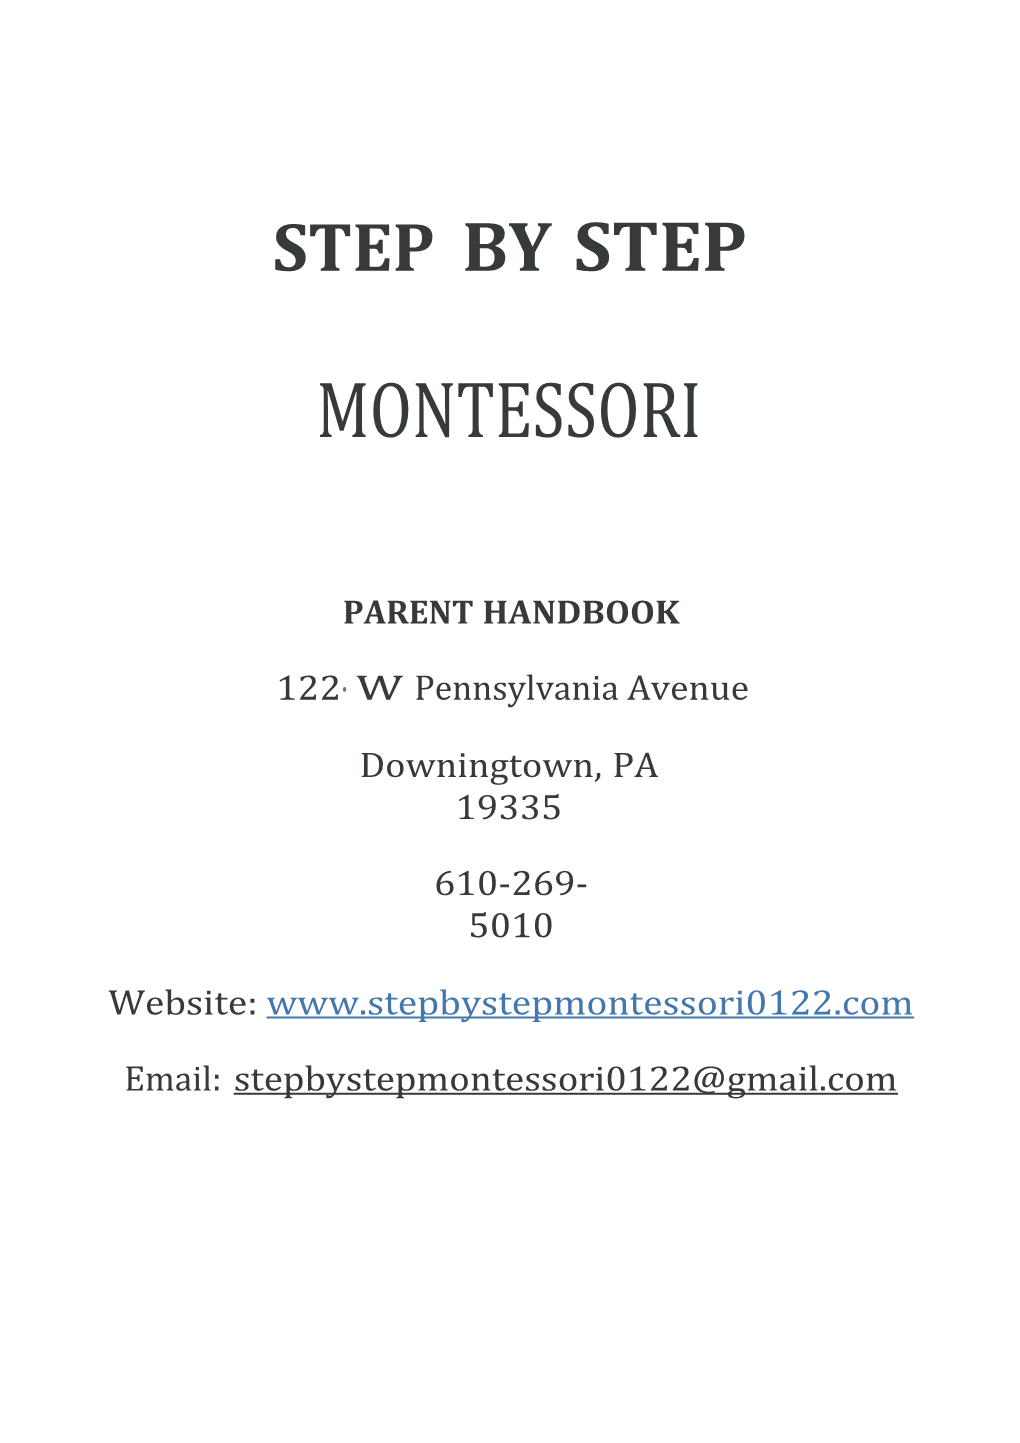 Step by Step Montessori Preschool